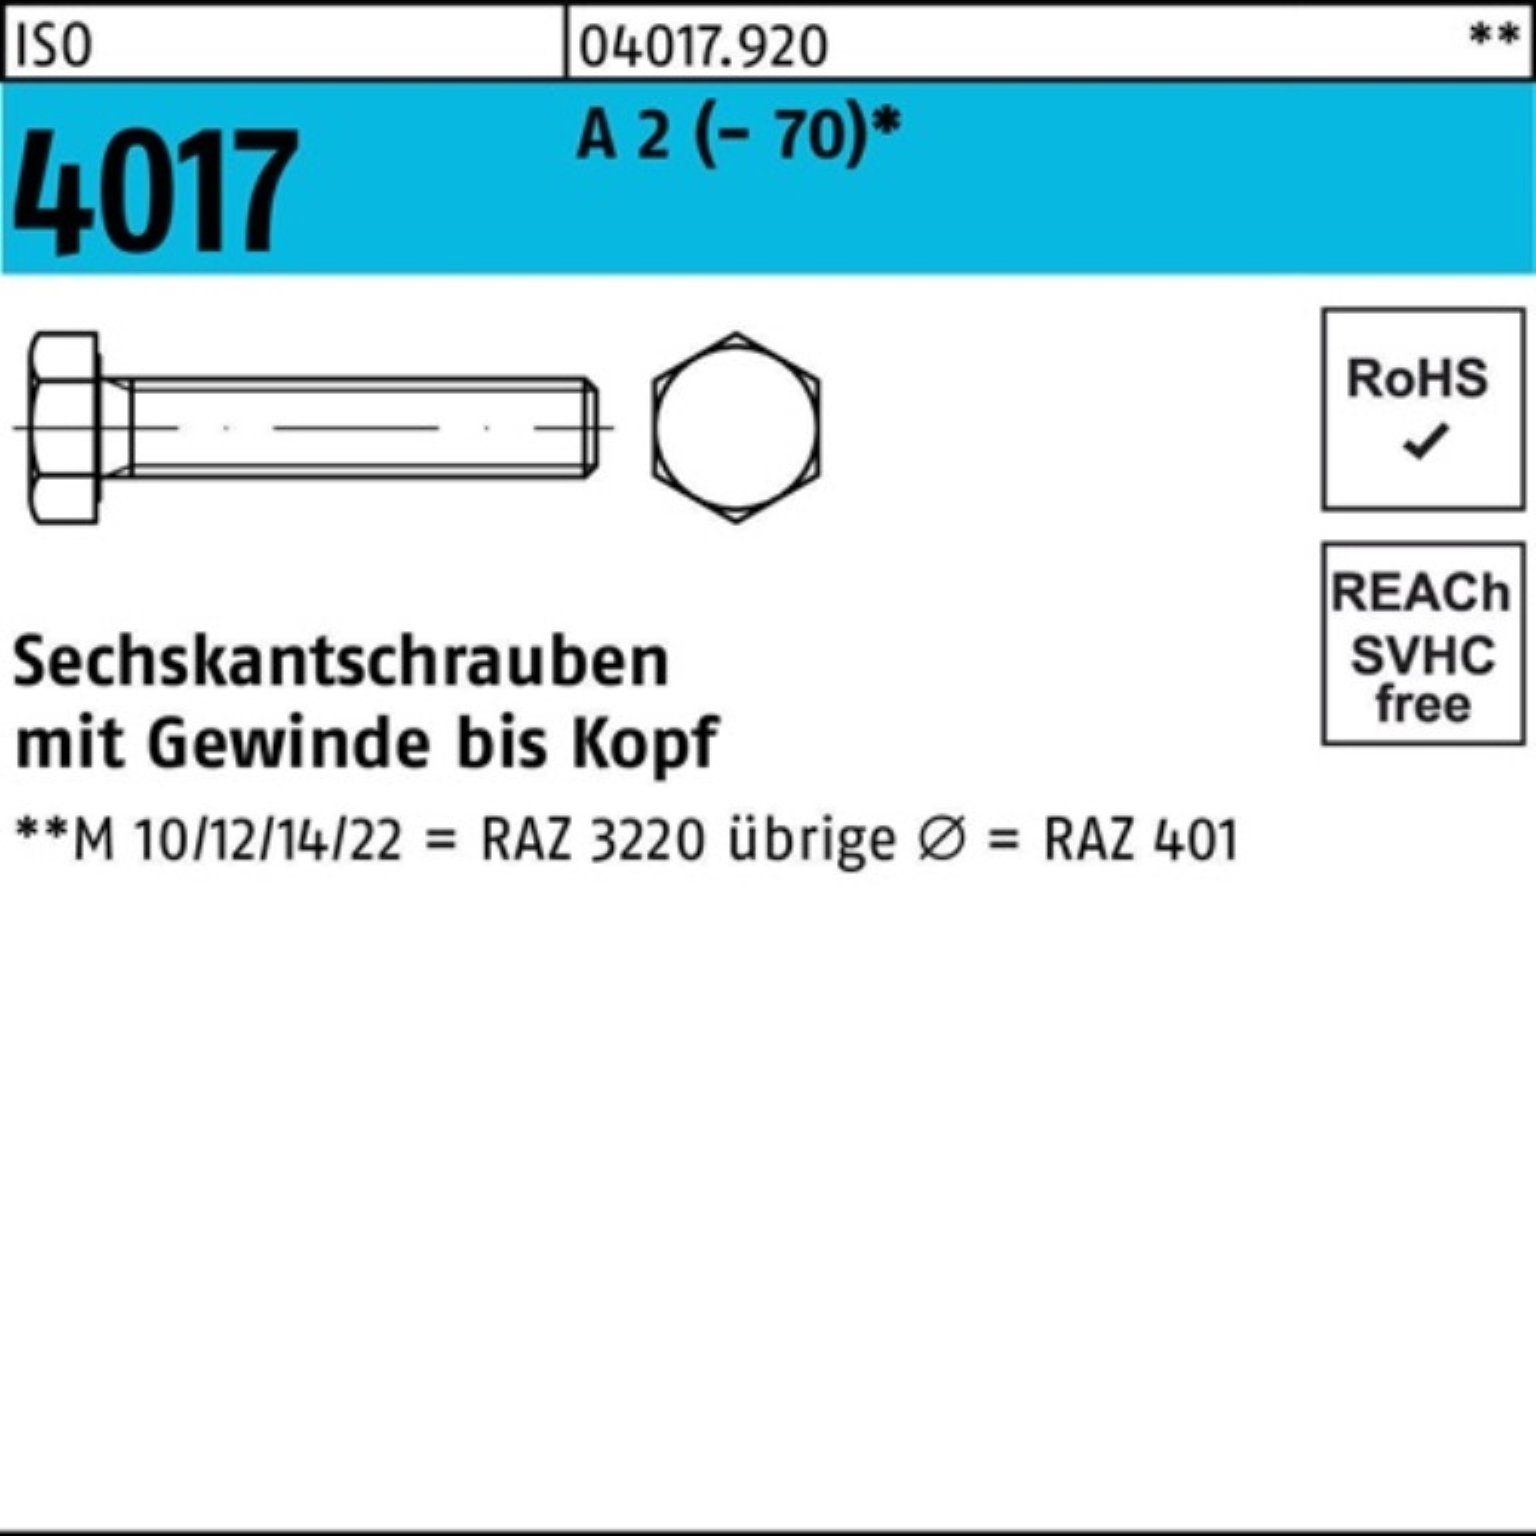 Bufab Sechskantschraube 100er 100 (70) Stück VG ISO Sechskantschraube I M5x 4017 2 Pack 6 A